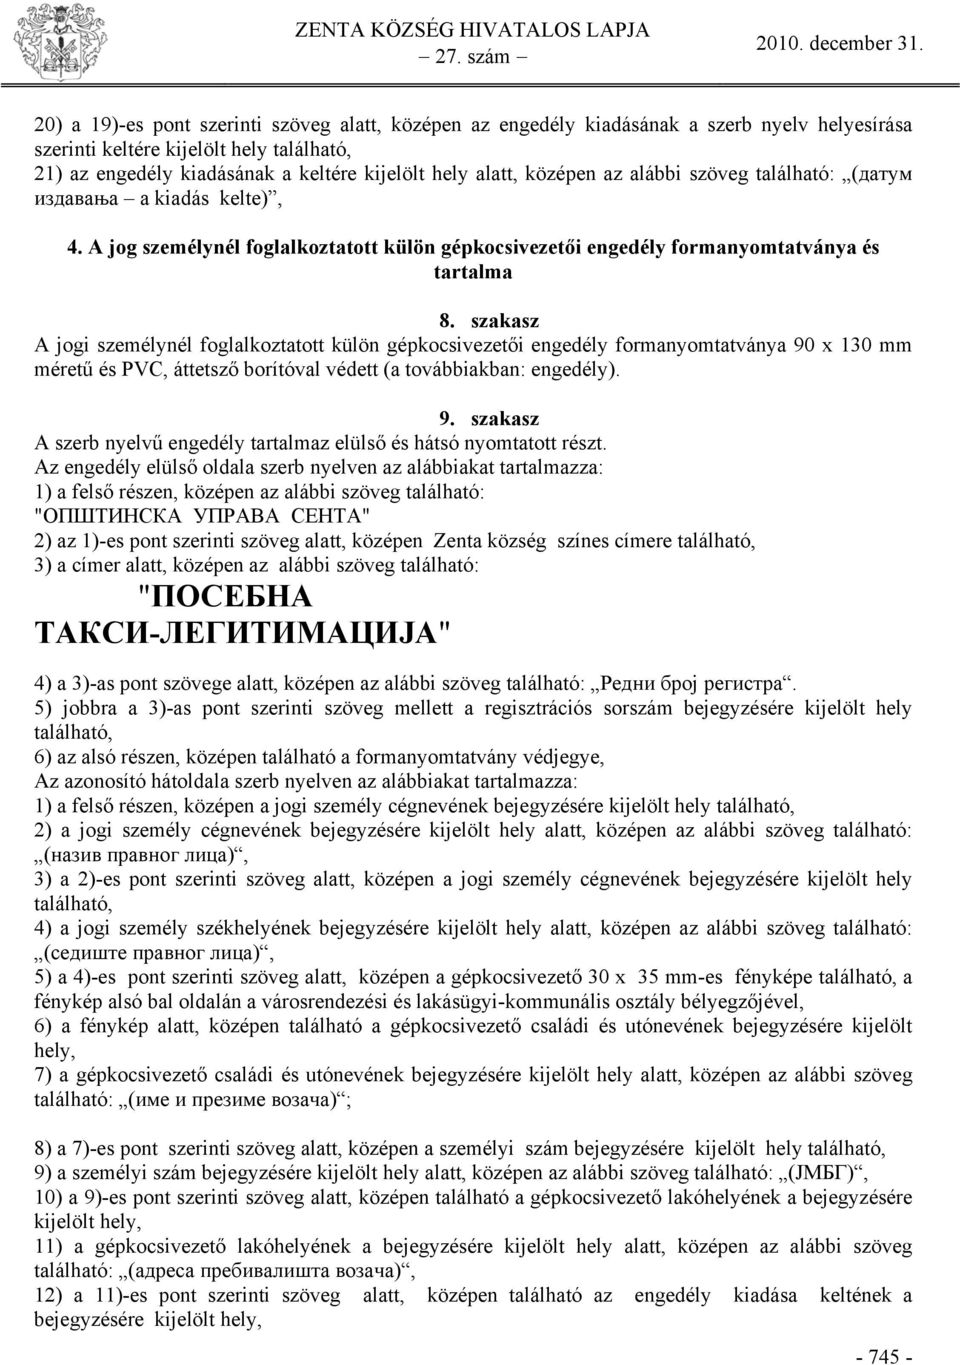 szakasz A jogi személynél foglalkoztatott külön gépkocsivezetői engedély formanyomtatványa 90 x 130 mm méretű és PVC, áttetsző borítóval védett (a továbbiakban: engedély). 9. szakasz A szerb nyelvű engedély tartalmaz elülső és hátsó nyomtatott részt.